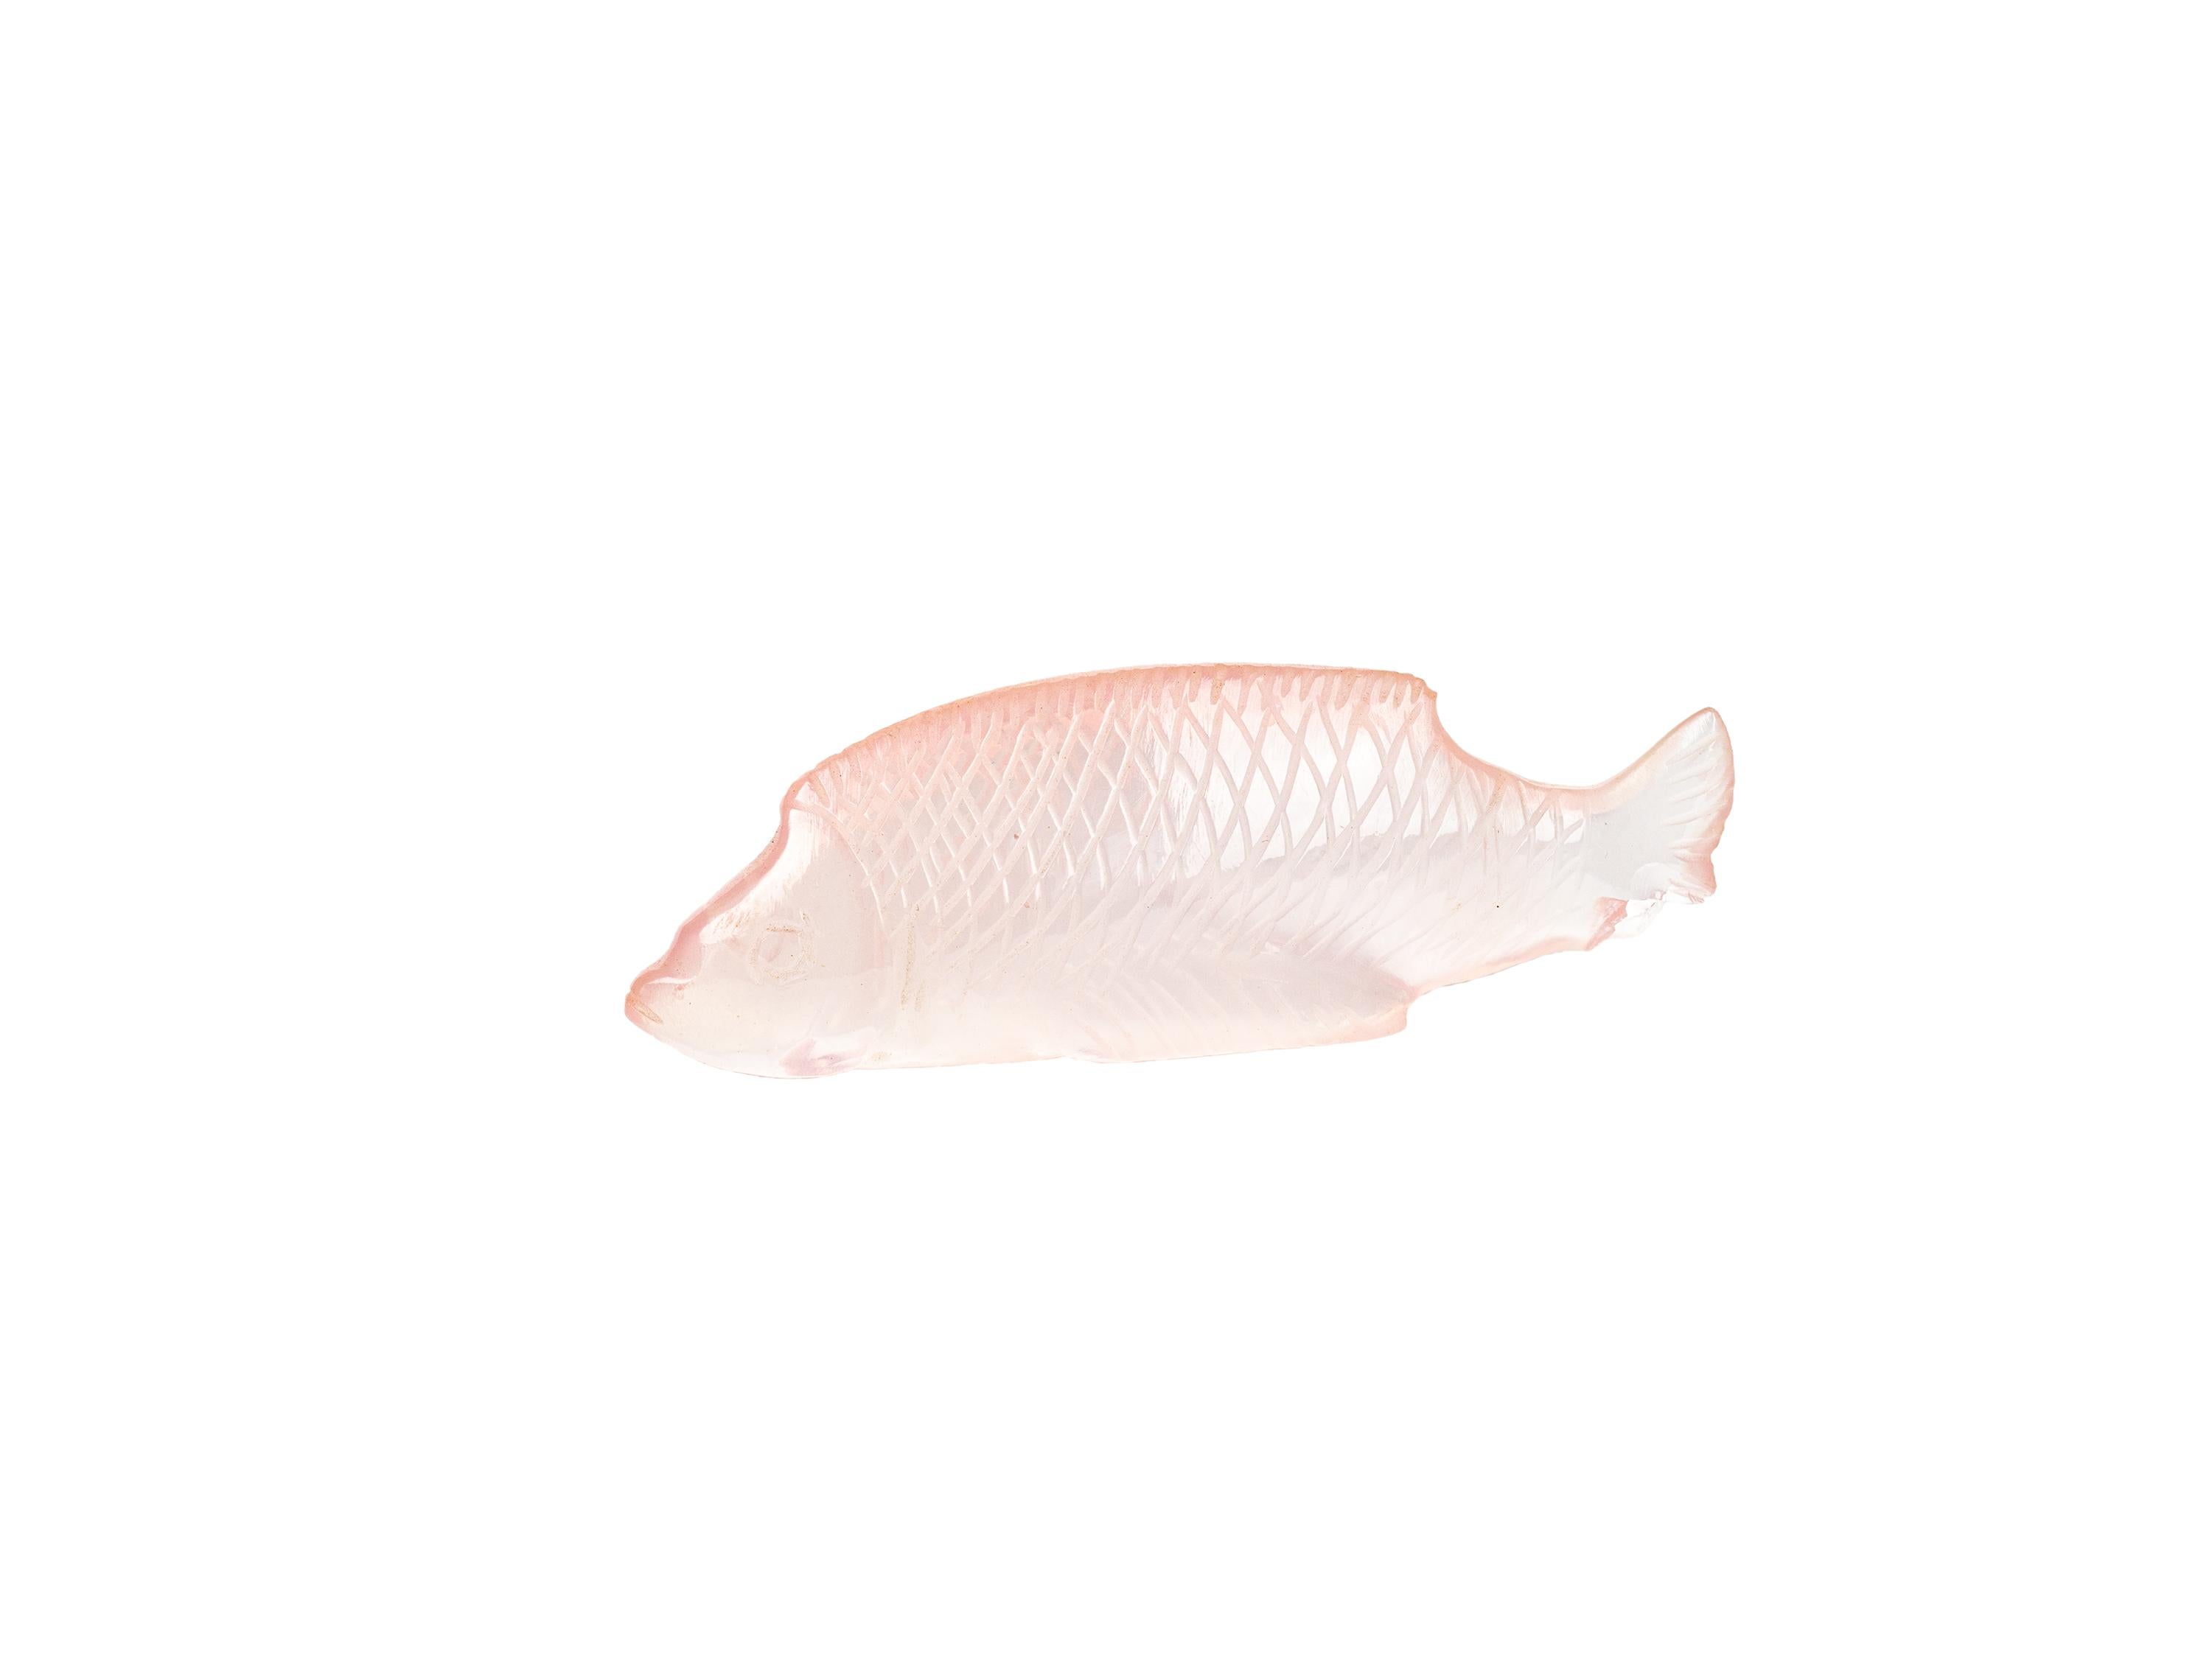 Eine exquisite Art-Deco-Fischminiatur aus rosa Sabino-Opalglas
Unterzeichnet 